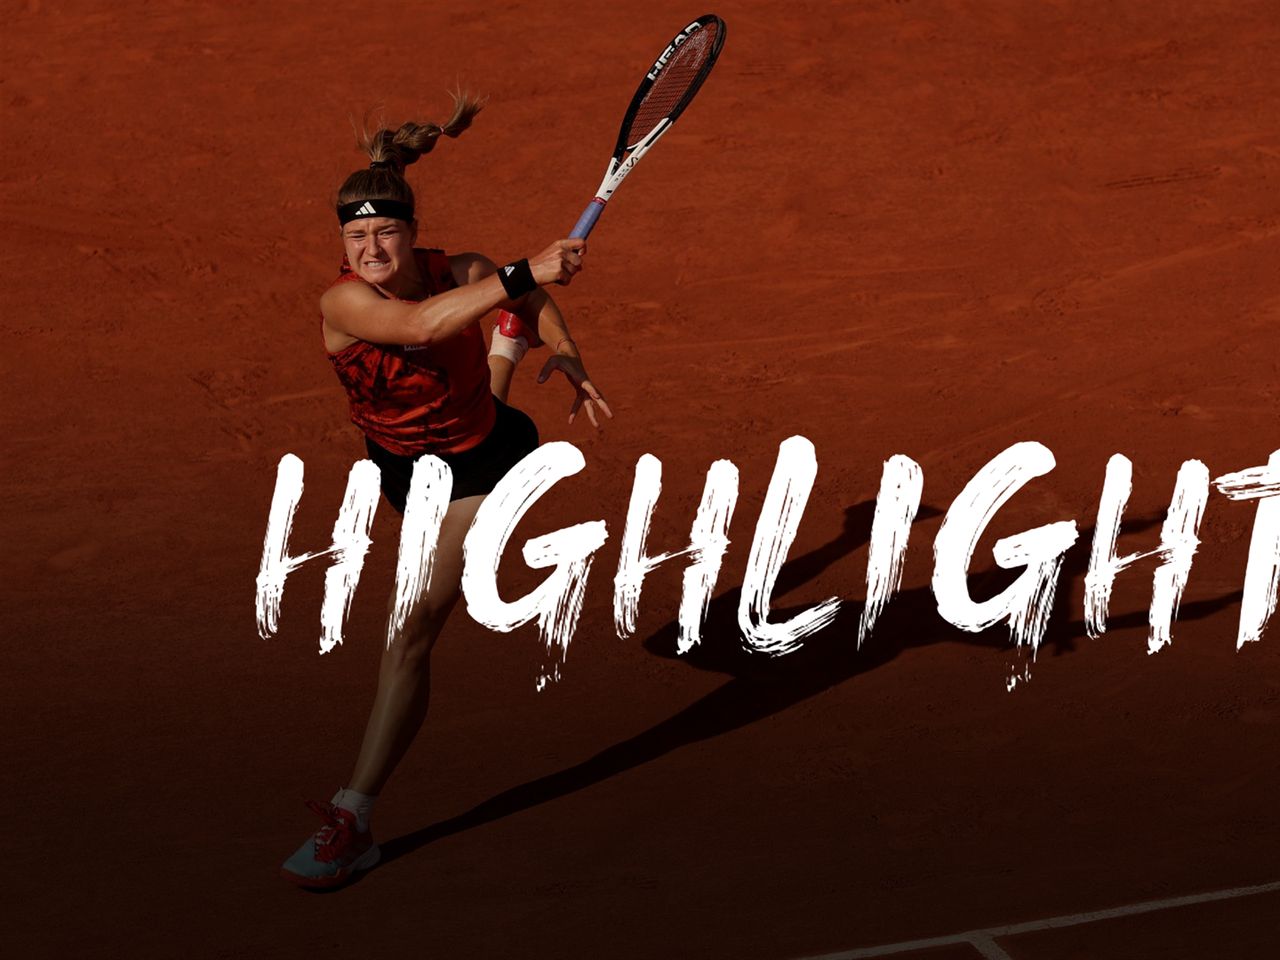 French Open 2023 Karolína Muchová - Aryna Sabalenka Highlights - Halbfinale Damen-Einzel - Tennis Video